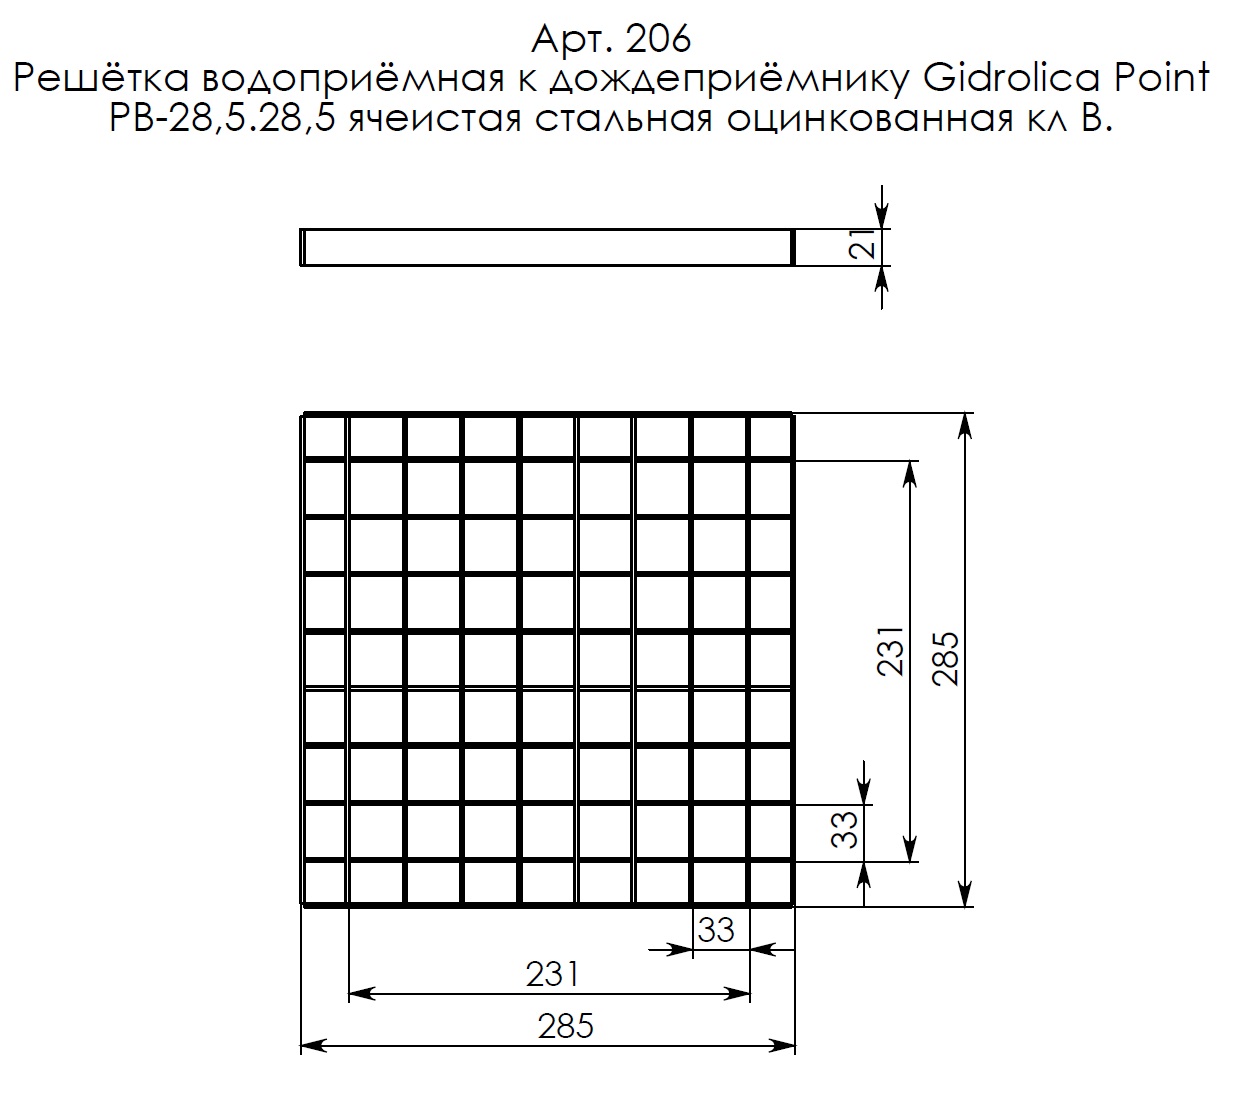 Решетка водоприемная Gidrolica Point РВ-28,5.28,5-ячеистая стальная оцинкованная, кл. В125 (206) 3